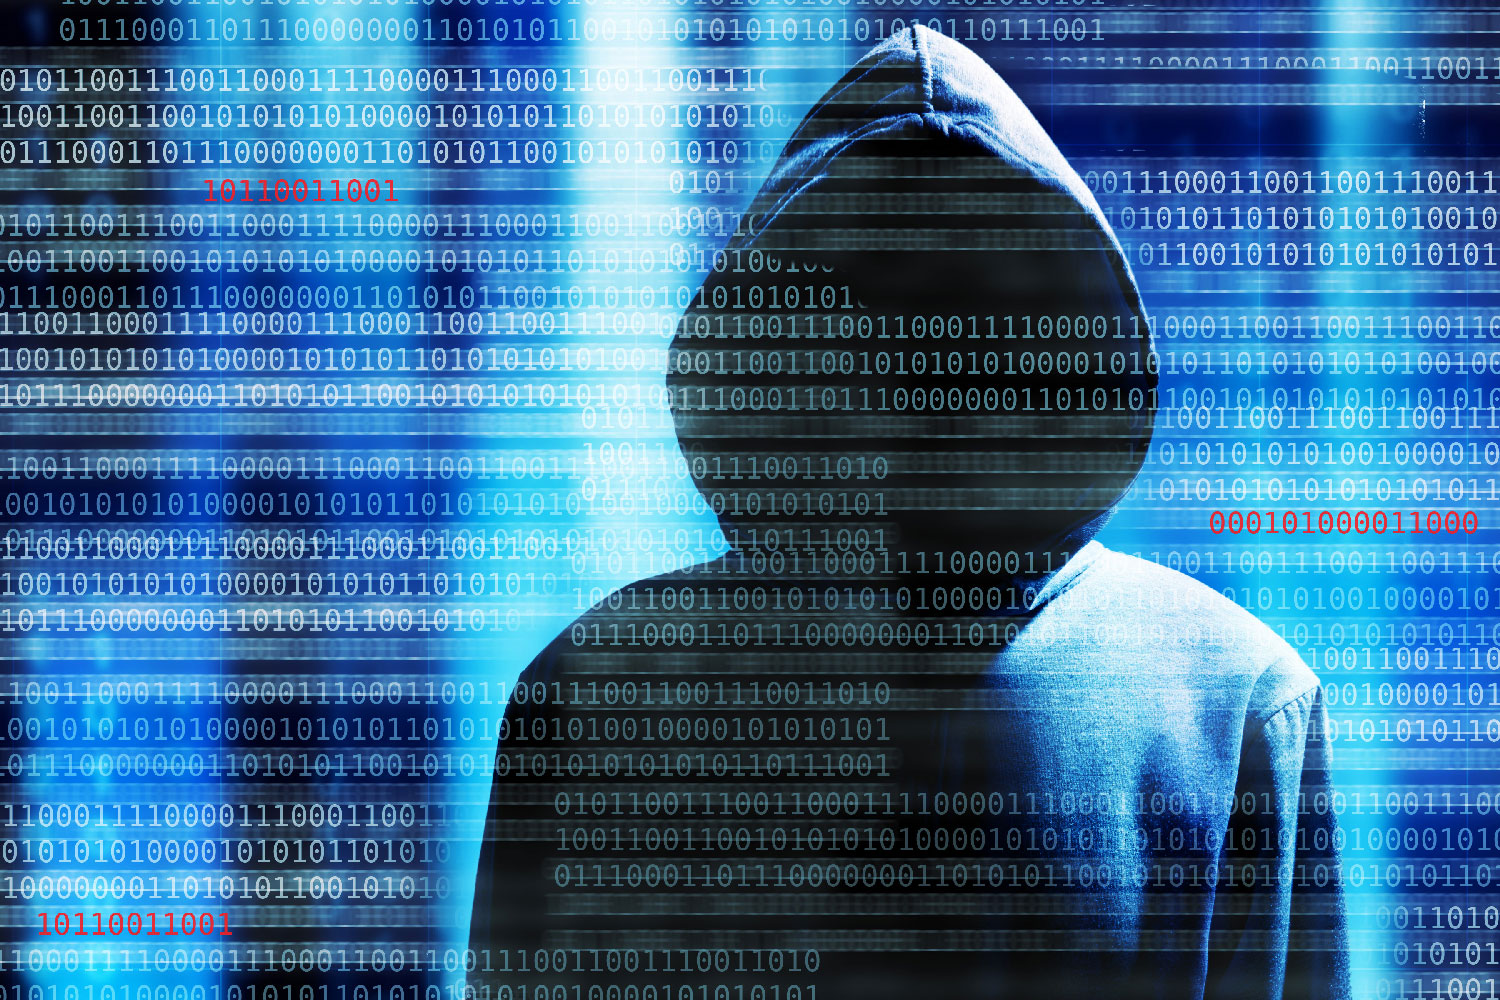 Un grupo de hackers roba 900 millones de euros a 100 bancos